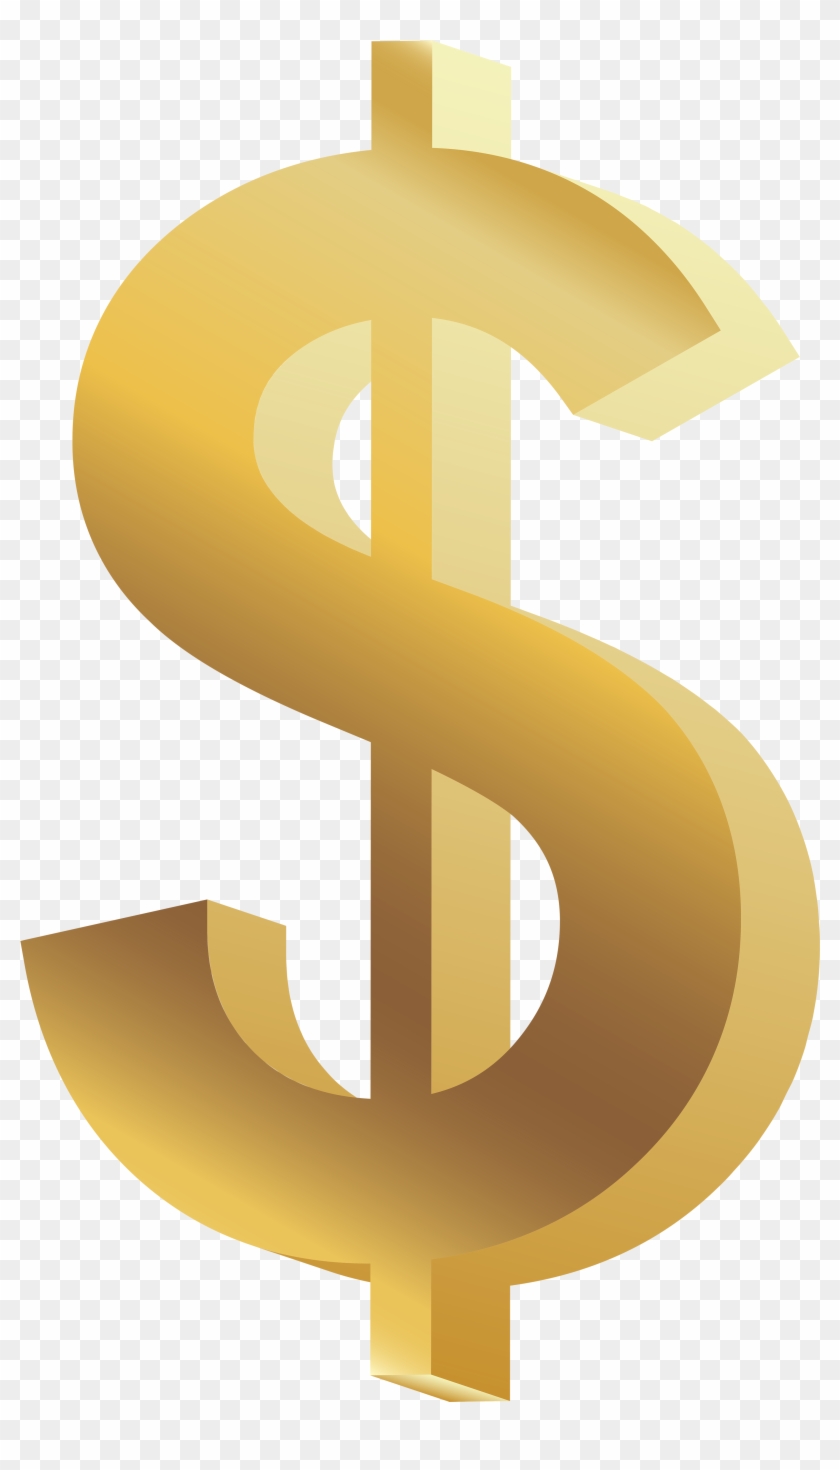 Dollar Symbol Png Clip Art - Money Symbol Png Transparent Png #151489